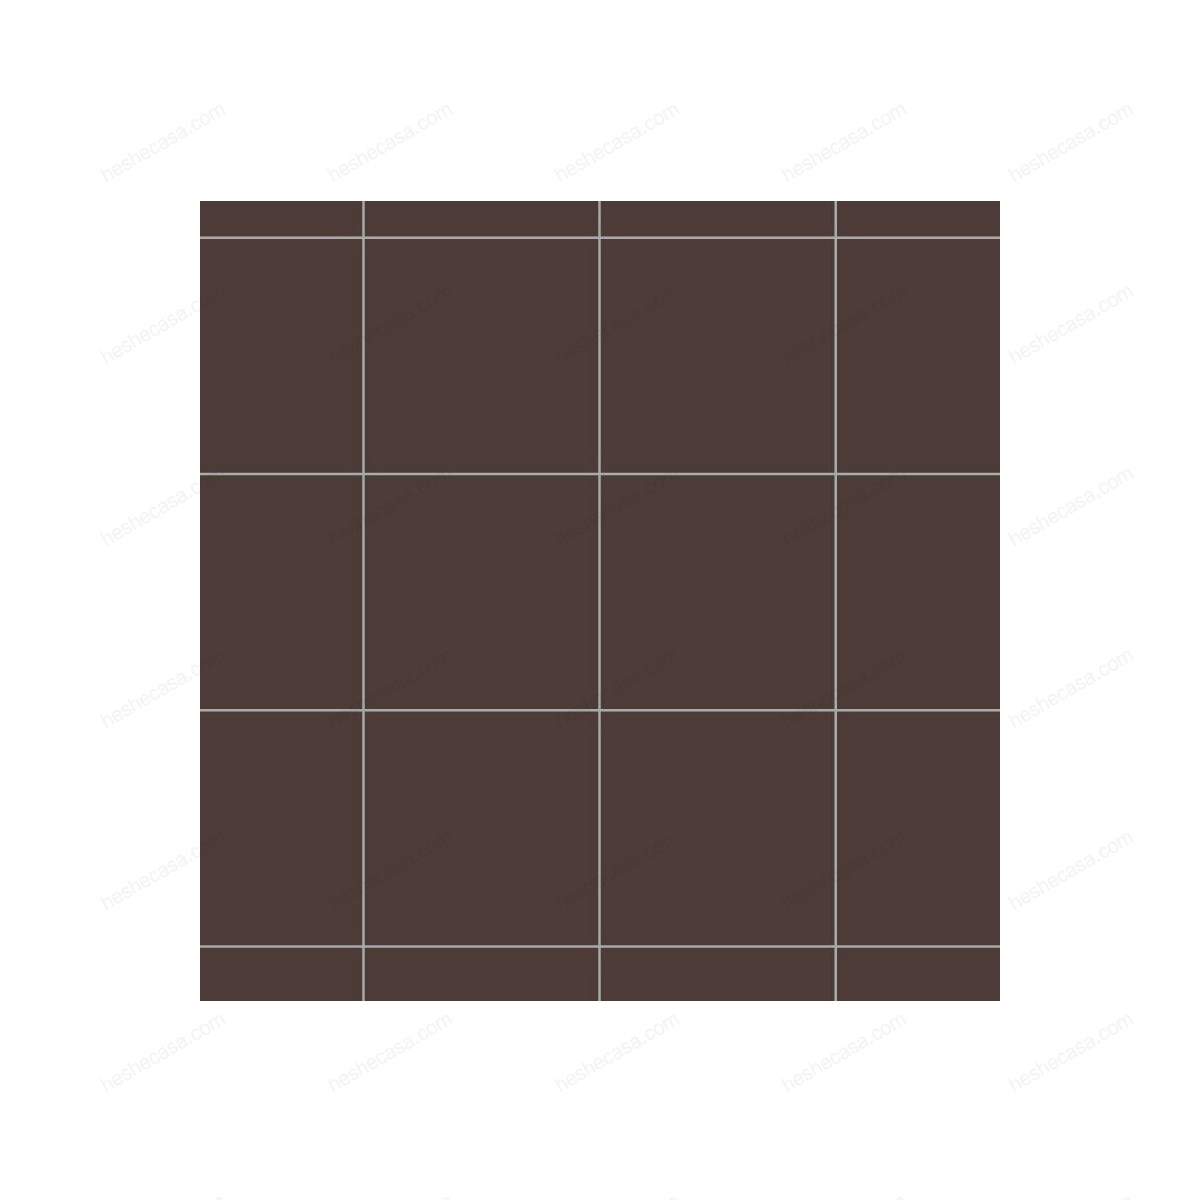 Cioccolato (Q)瓷砖